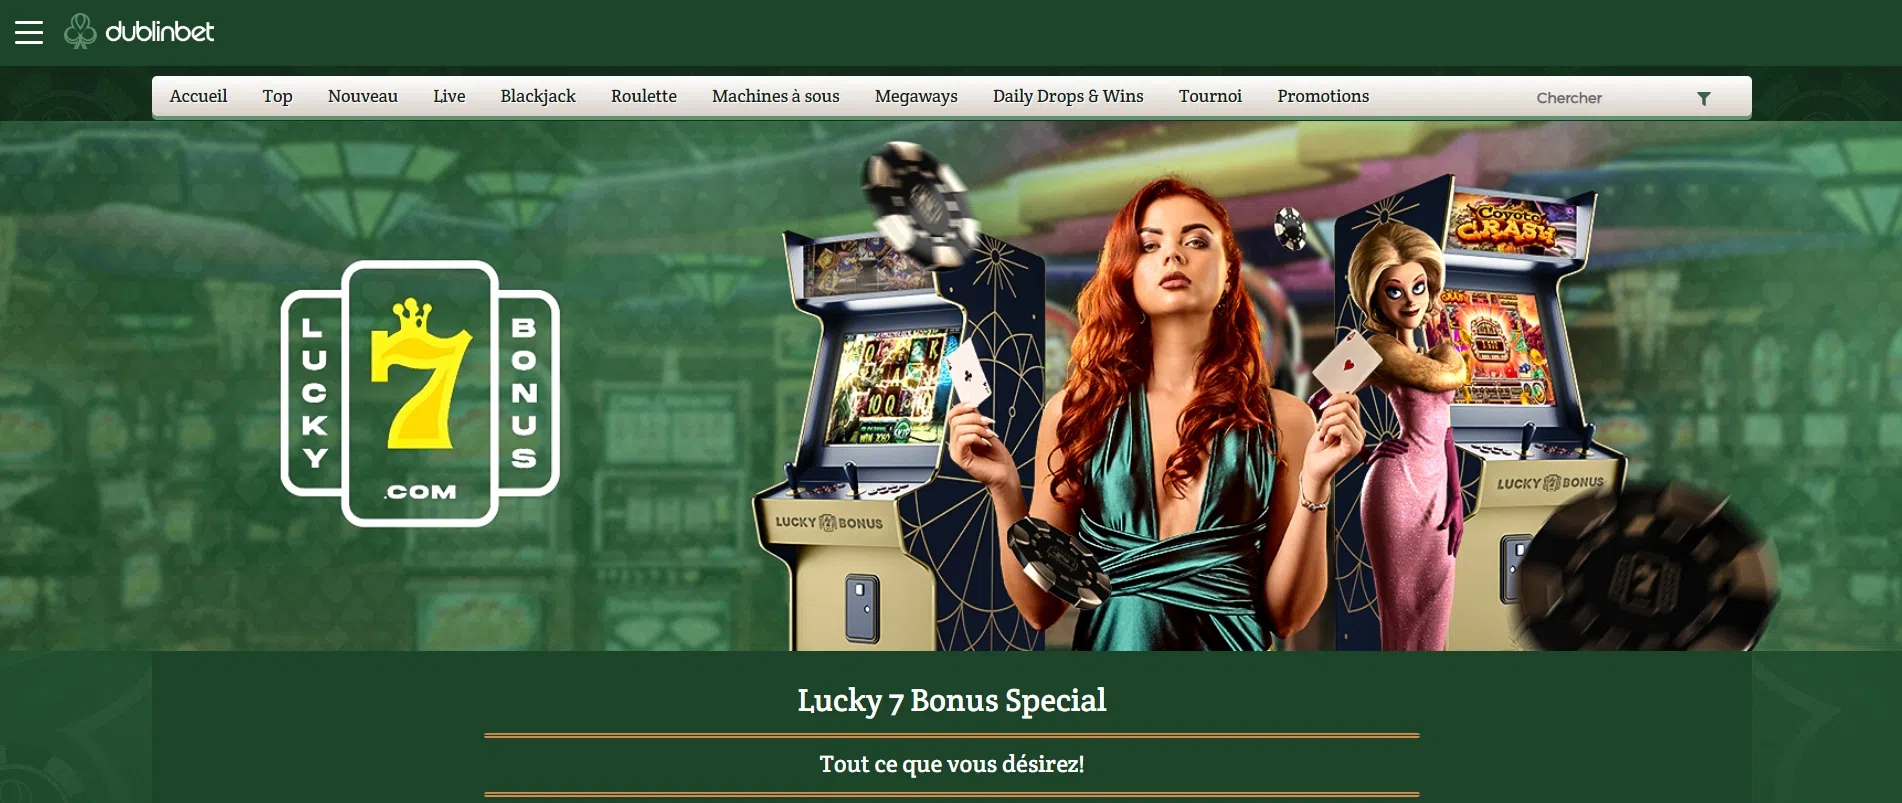 offre exclusive avec lucky7bonus sur le casino dublinbet